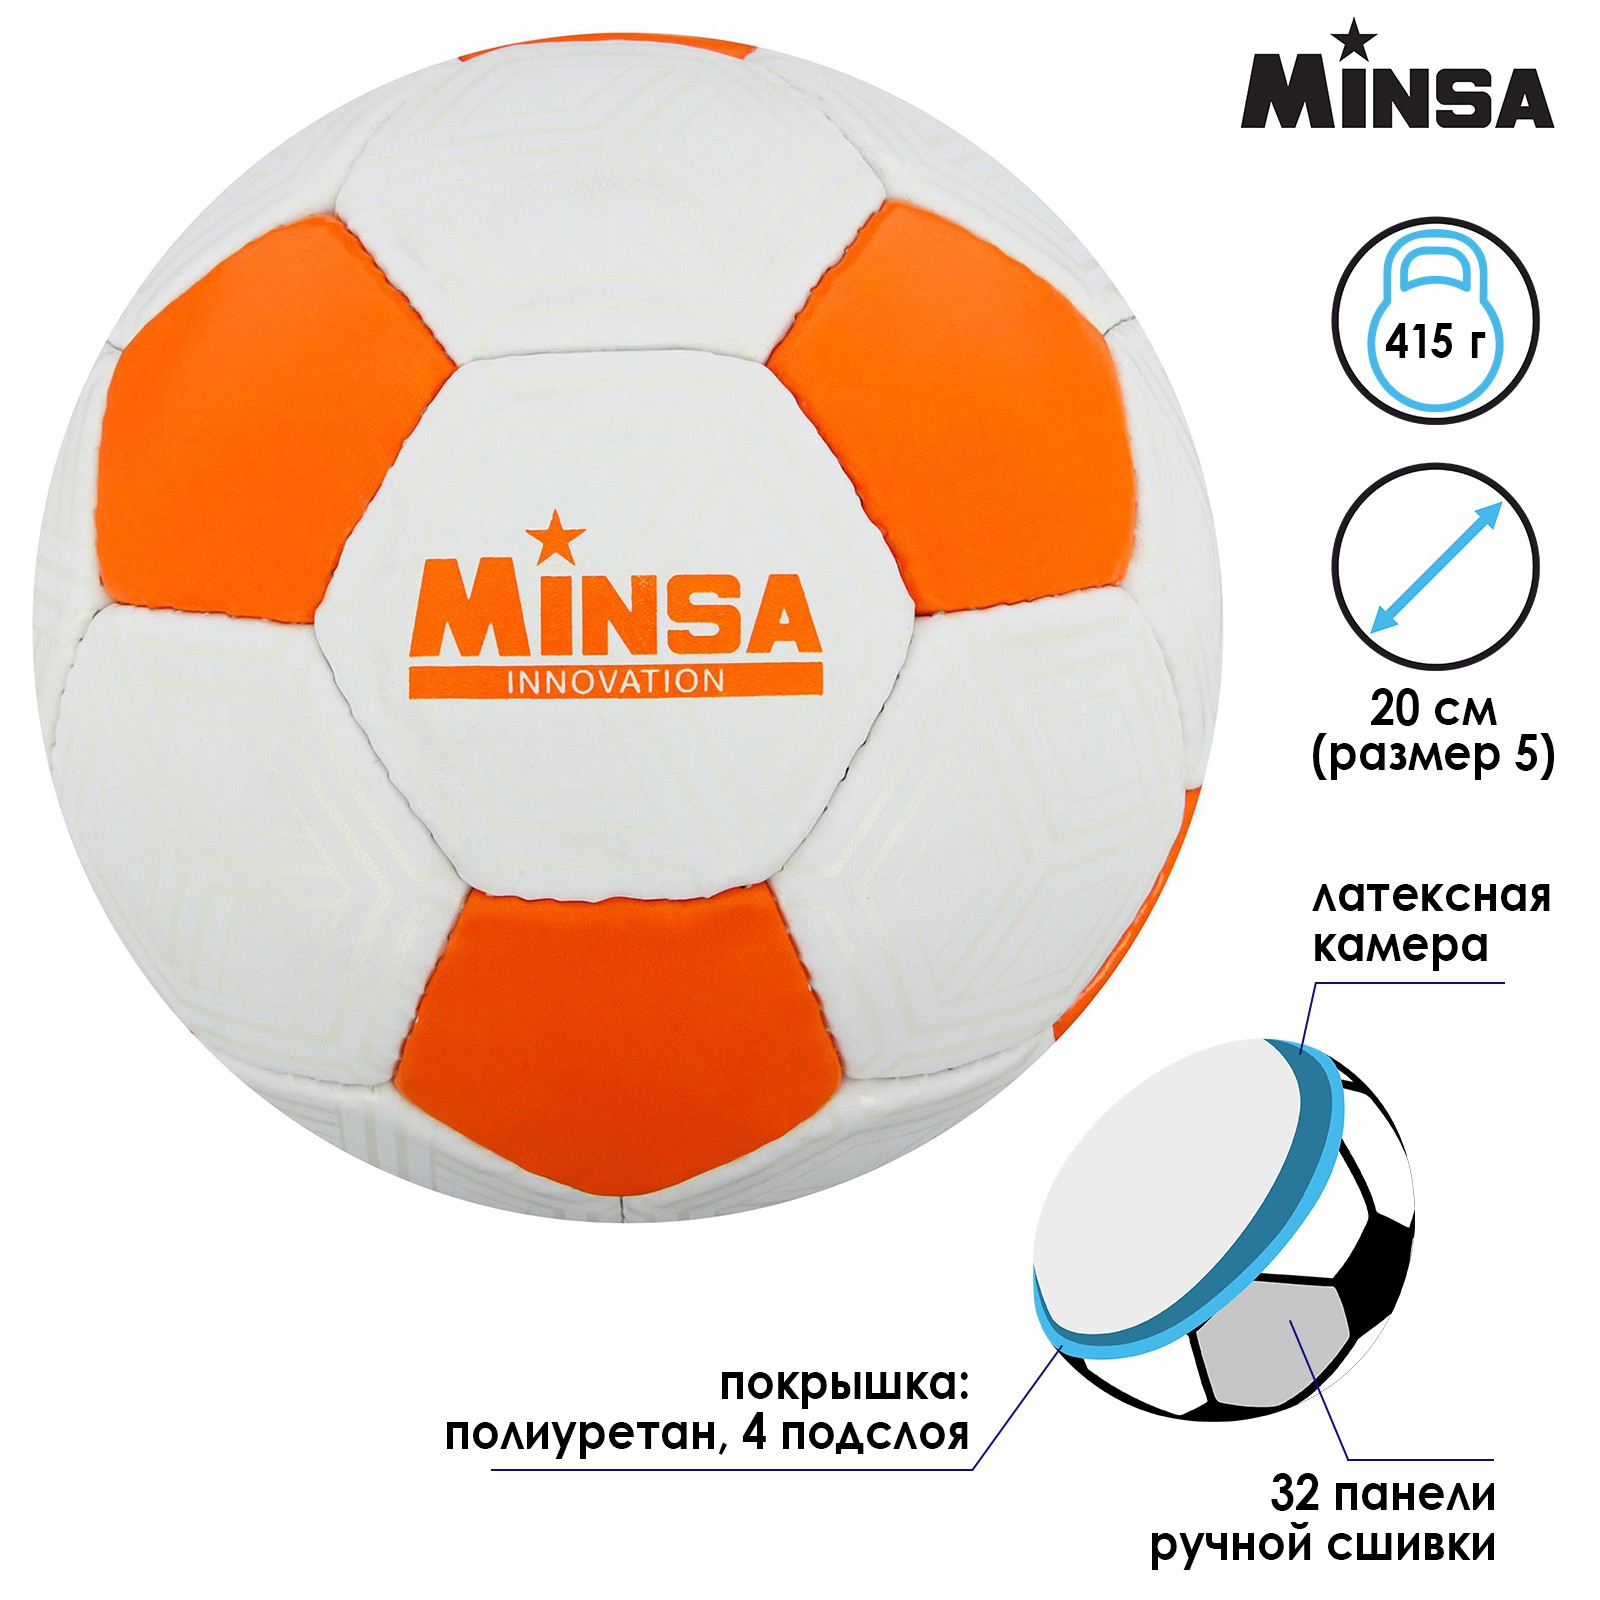 Мяч MINSA футбольный PU. ручная сшивка. 32 панели. размер 5. 415 г - фото 2